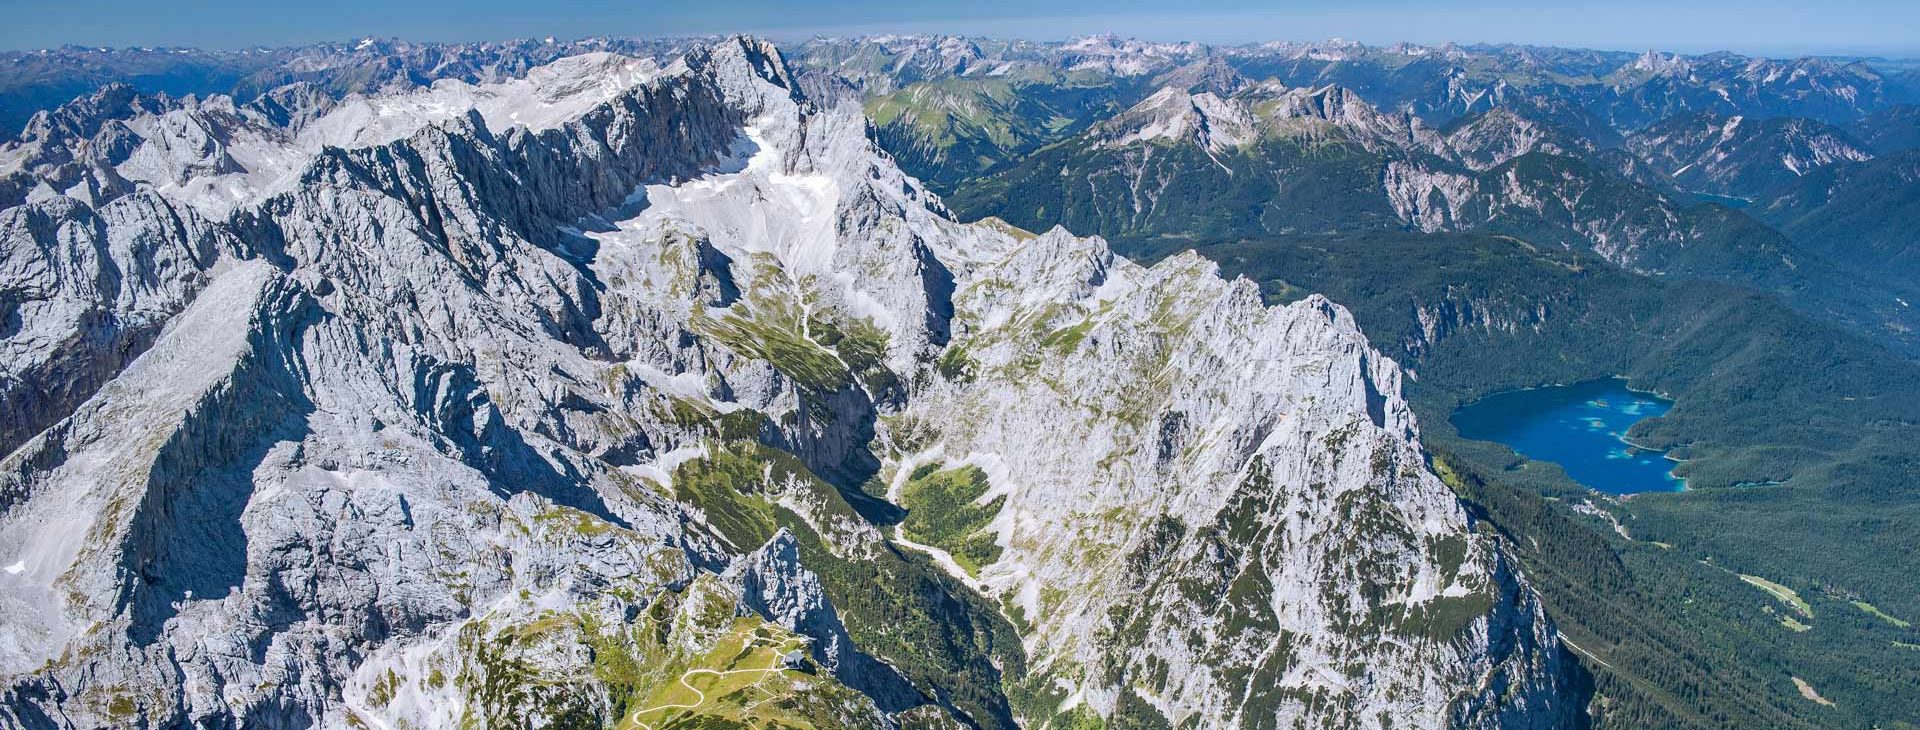 Zugspitzpanorama - 200 Jahre Geschichten um die Zugspitze (Foto: DAV)